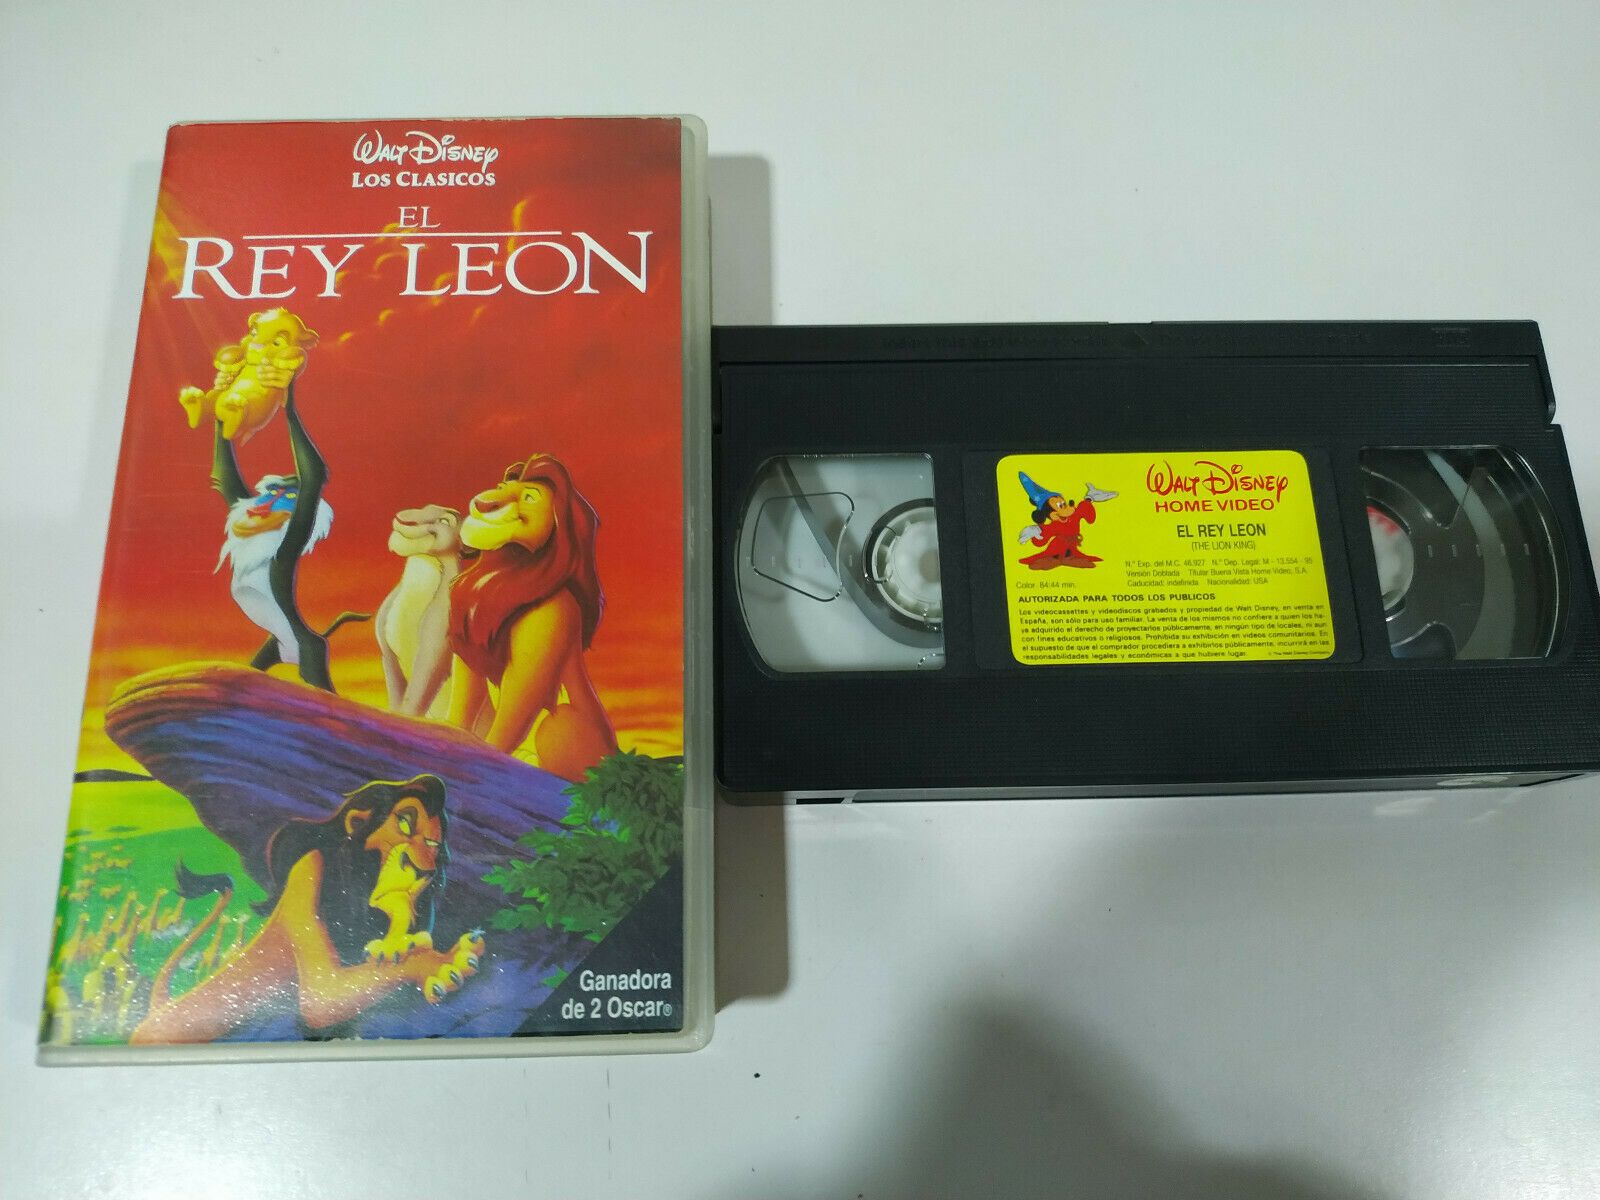 Cinta VHS de El Rey León, uno de los clásicos de Walt Disney.